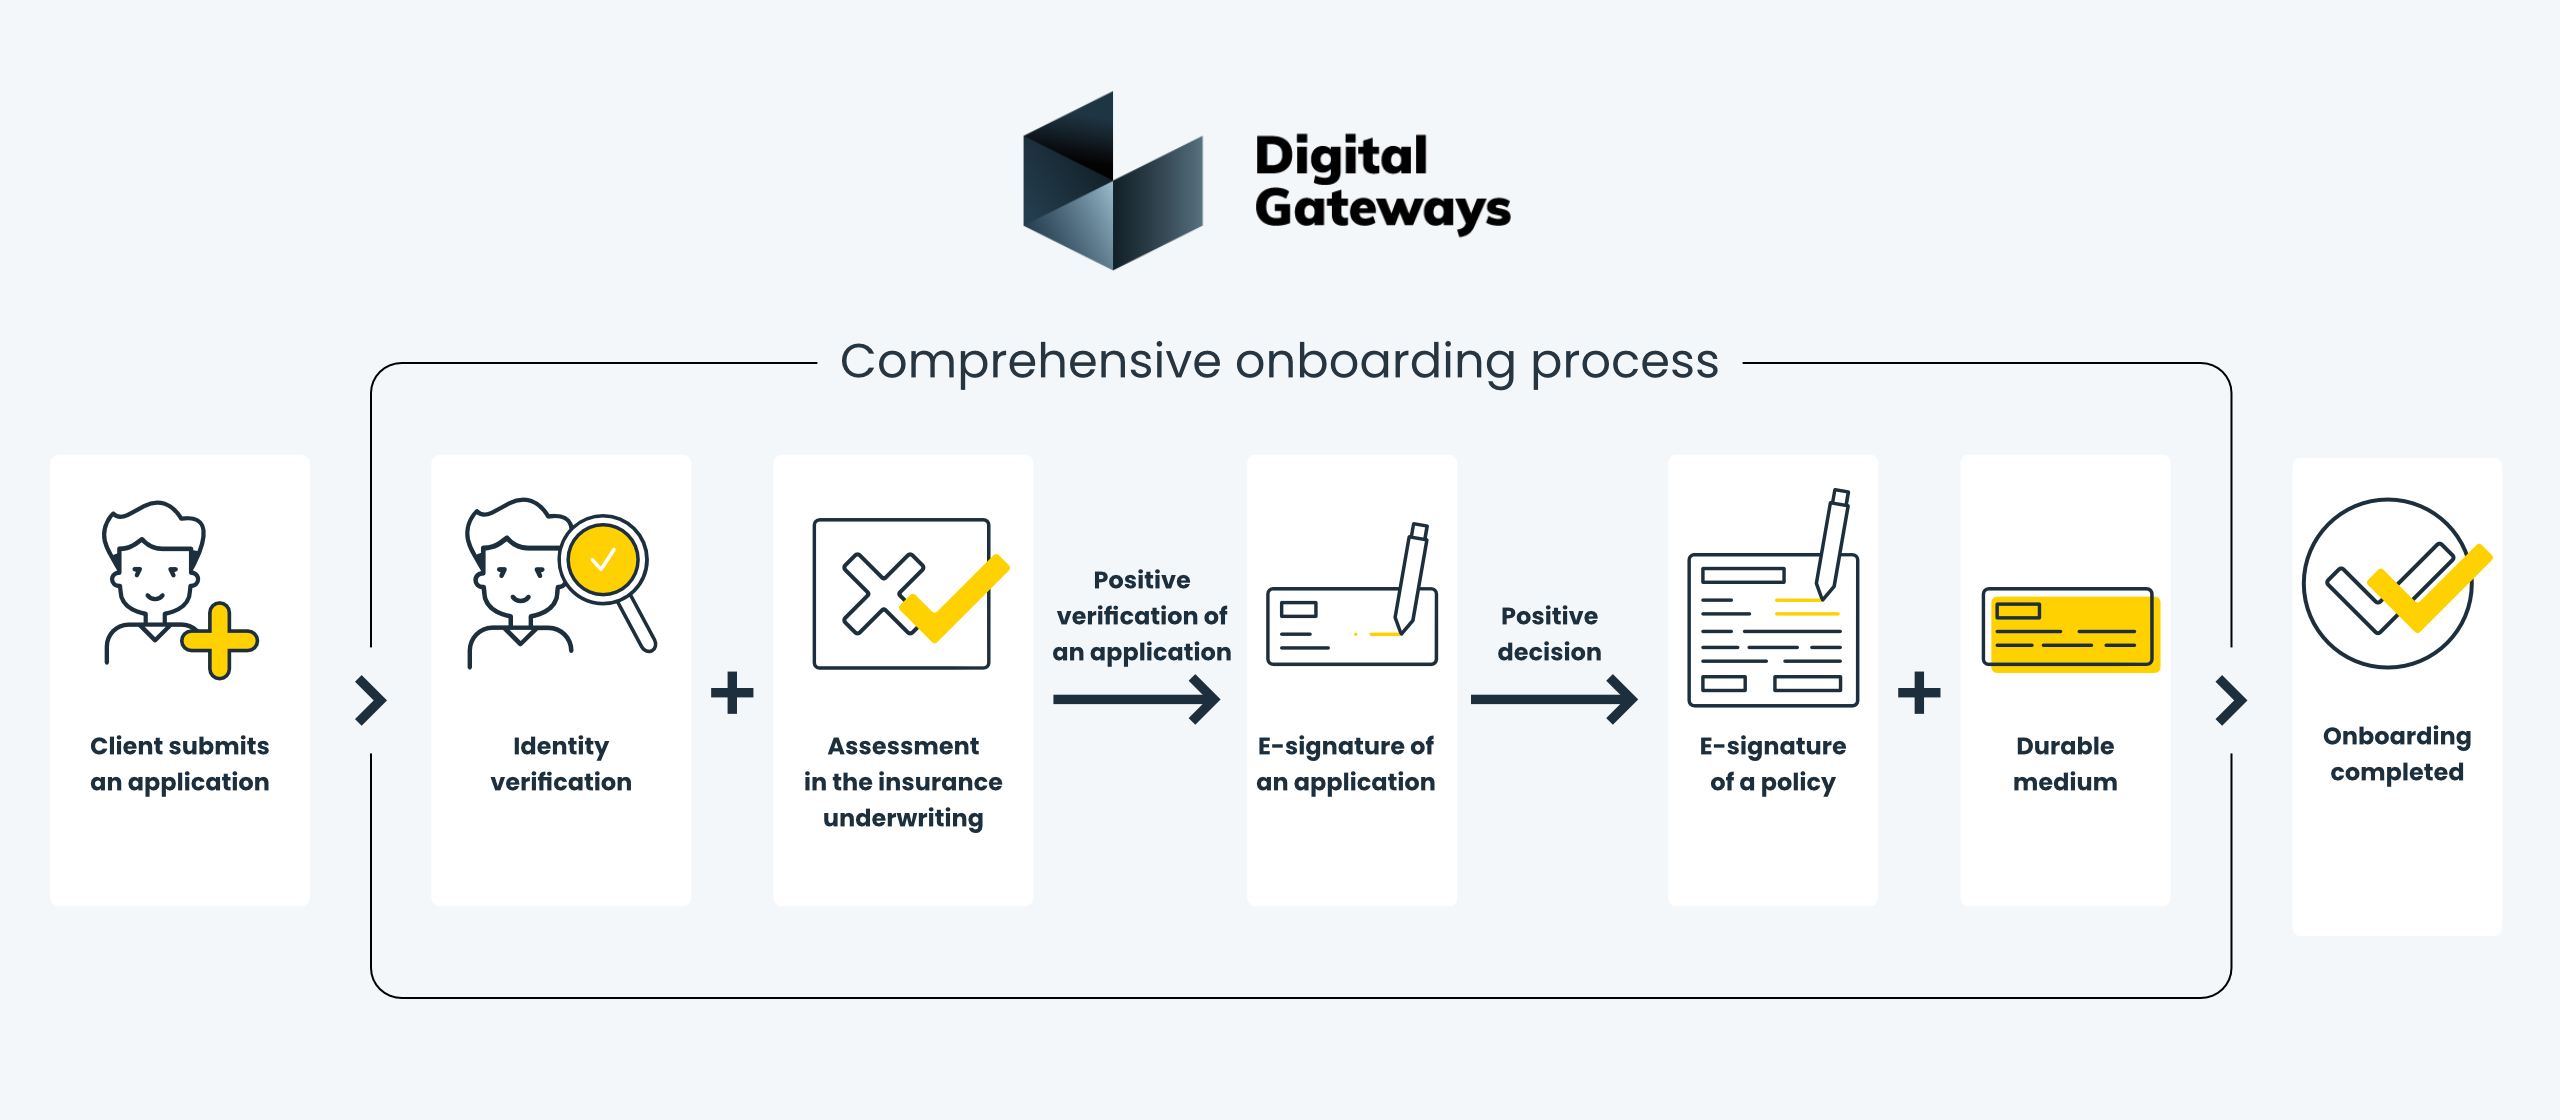 Full client onboarding process in Digital Gateways